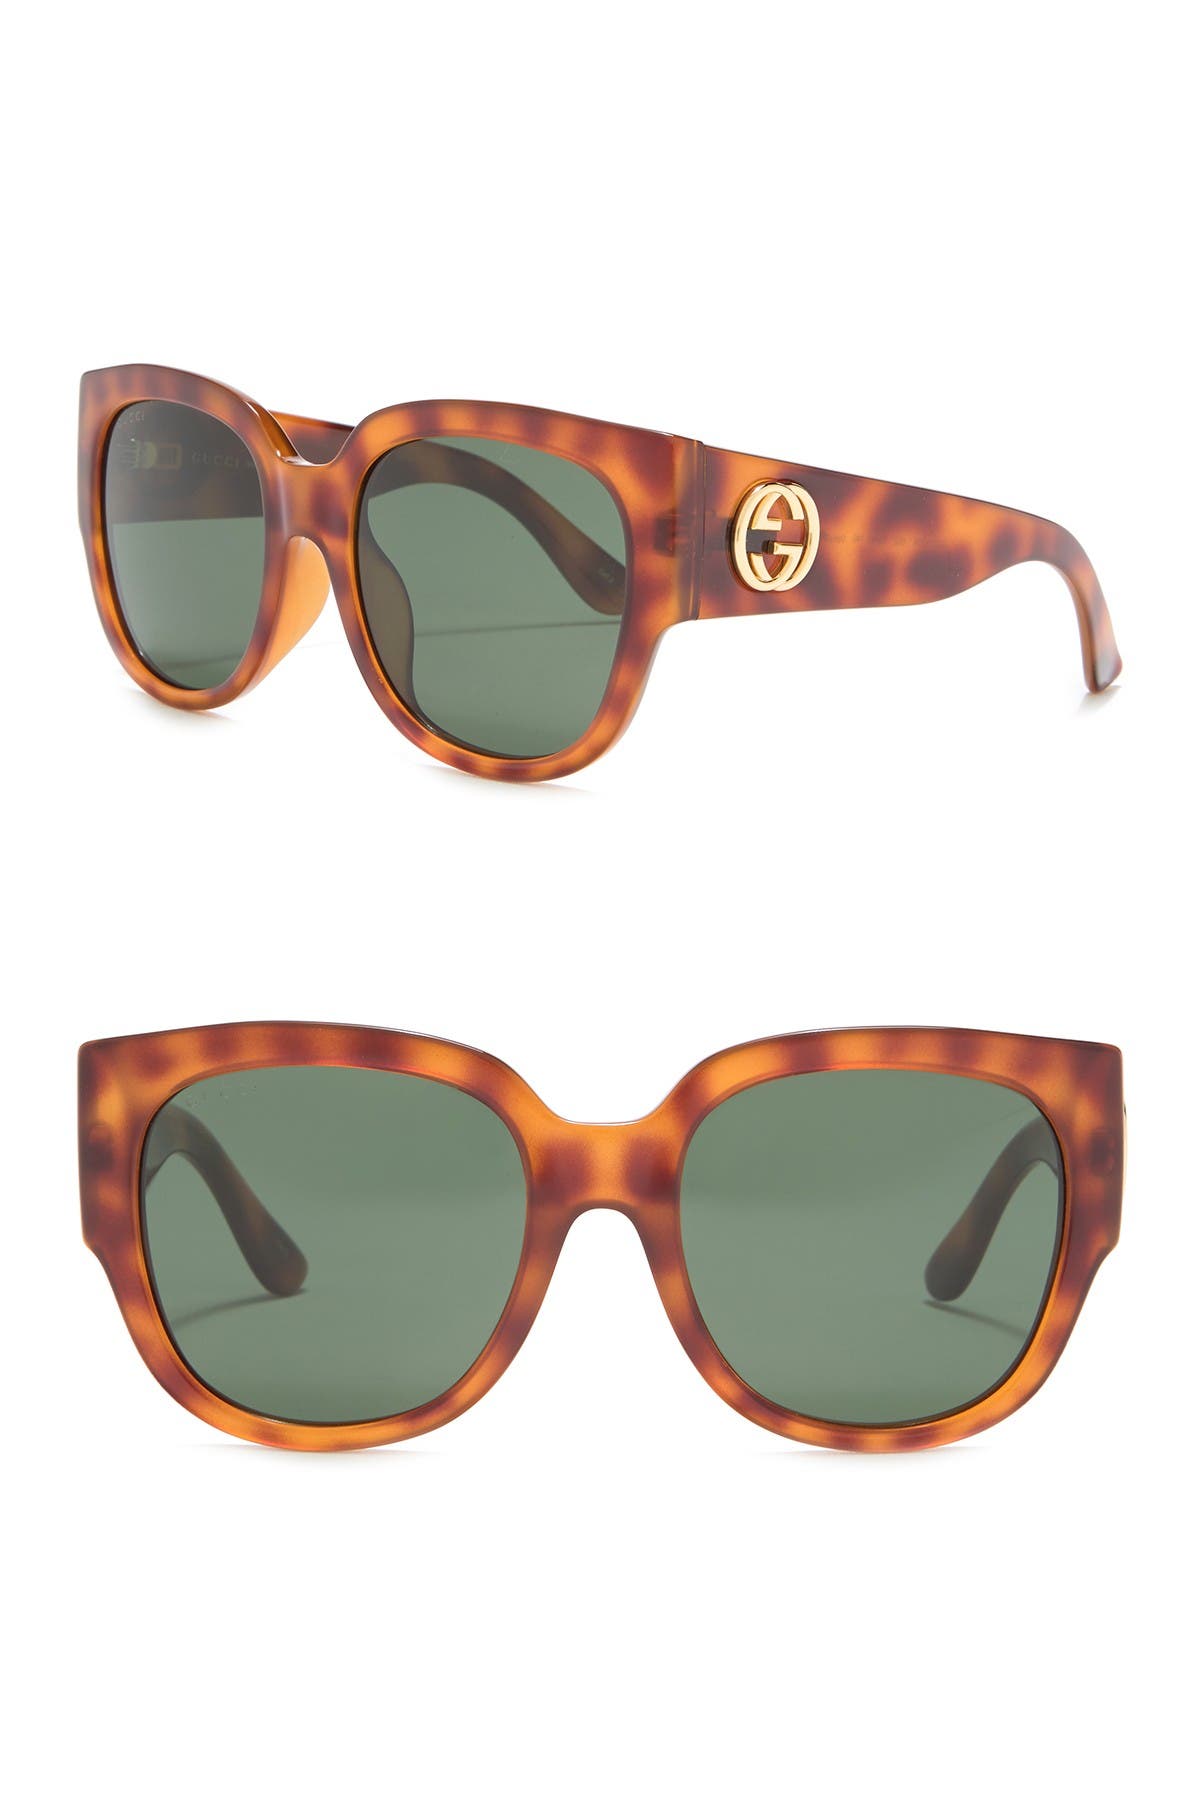 gucci 55mm square sunglasses